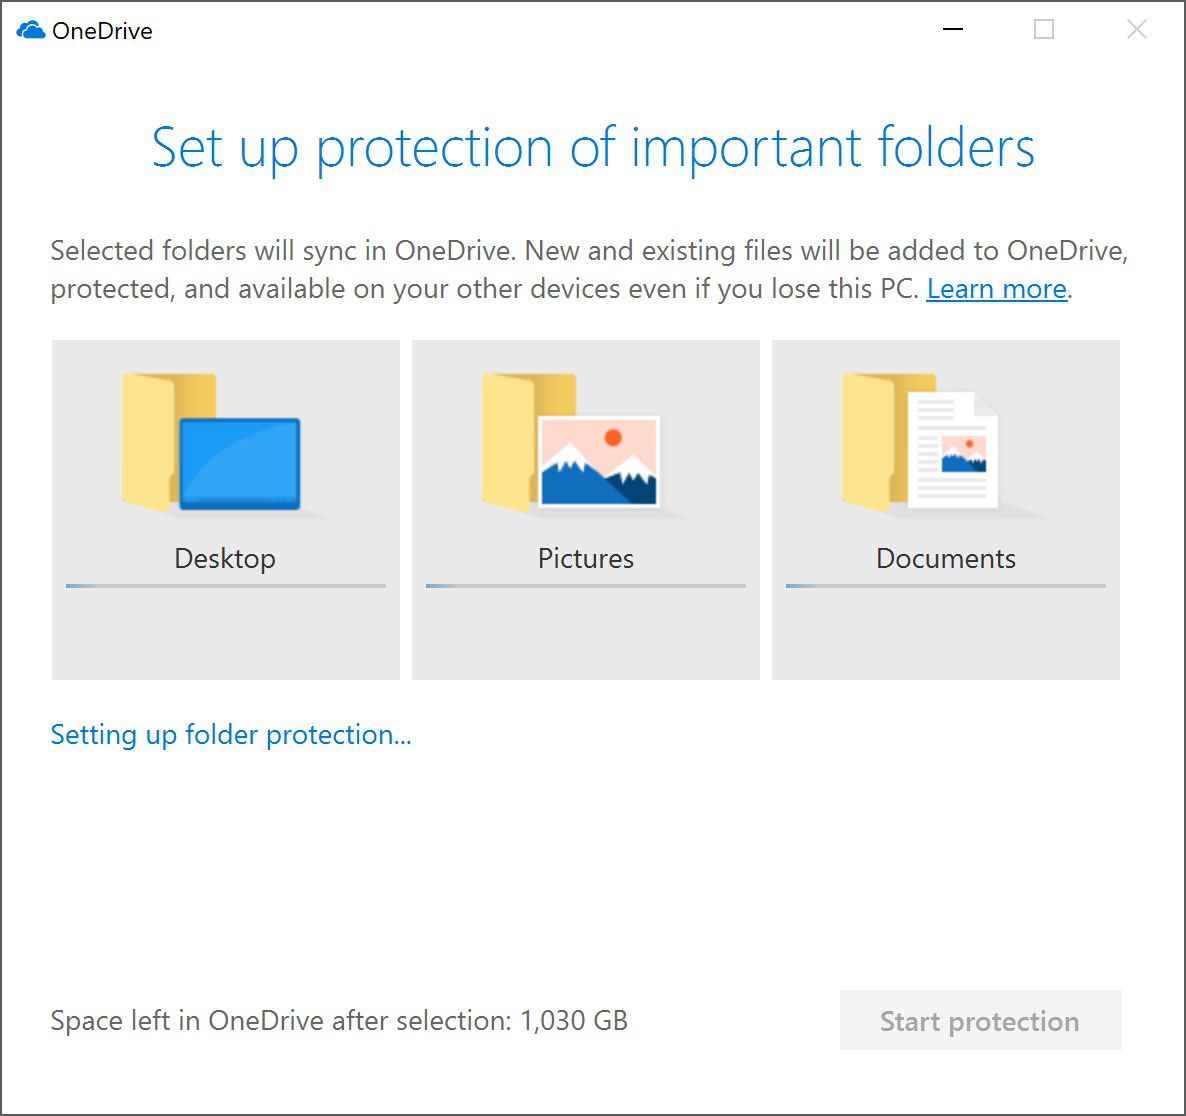 В OneDrive появилась защита содержимого папок с документами, изображениями и рабочего стола